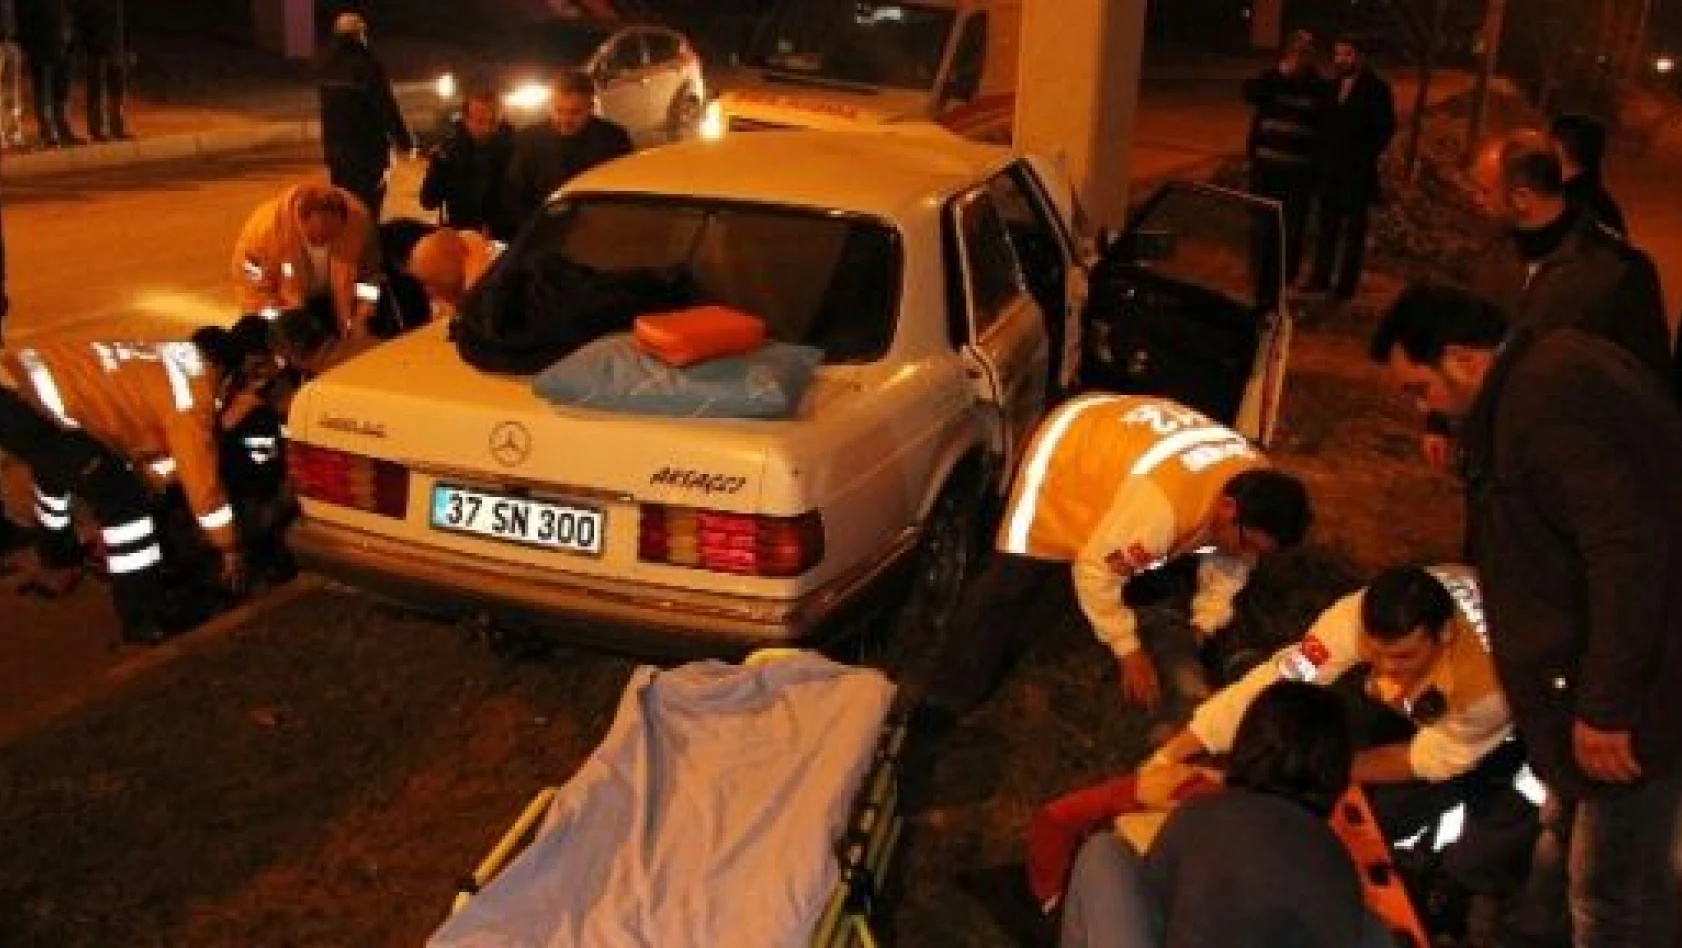 Kastamonu'da feci kaza: 2 ölü, 3 yaralı